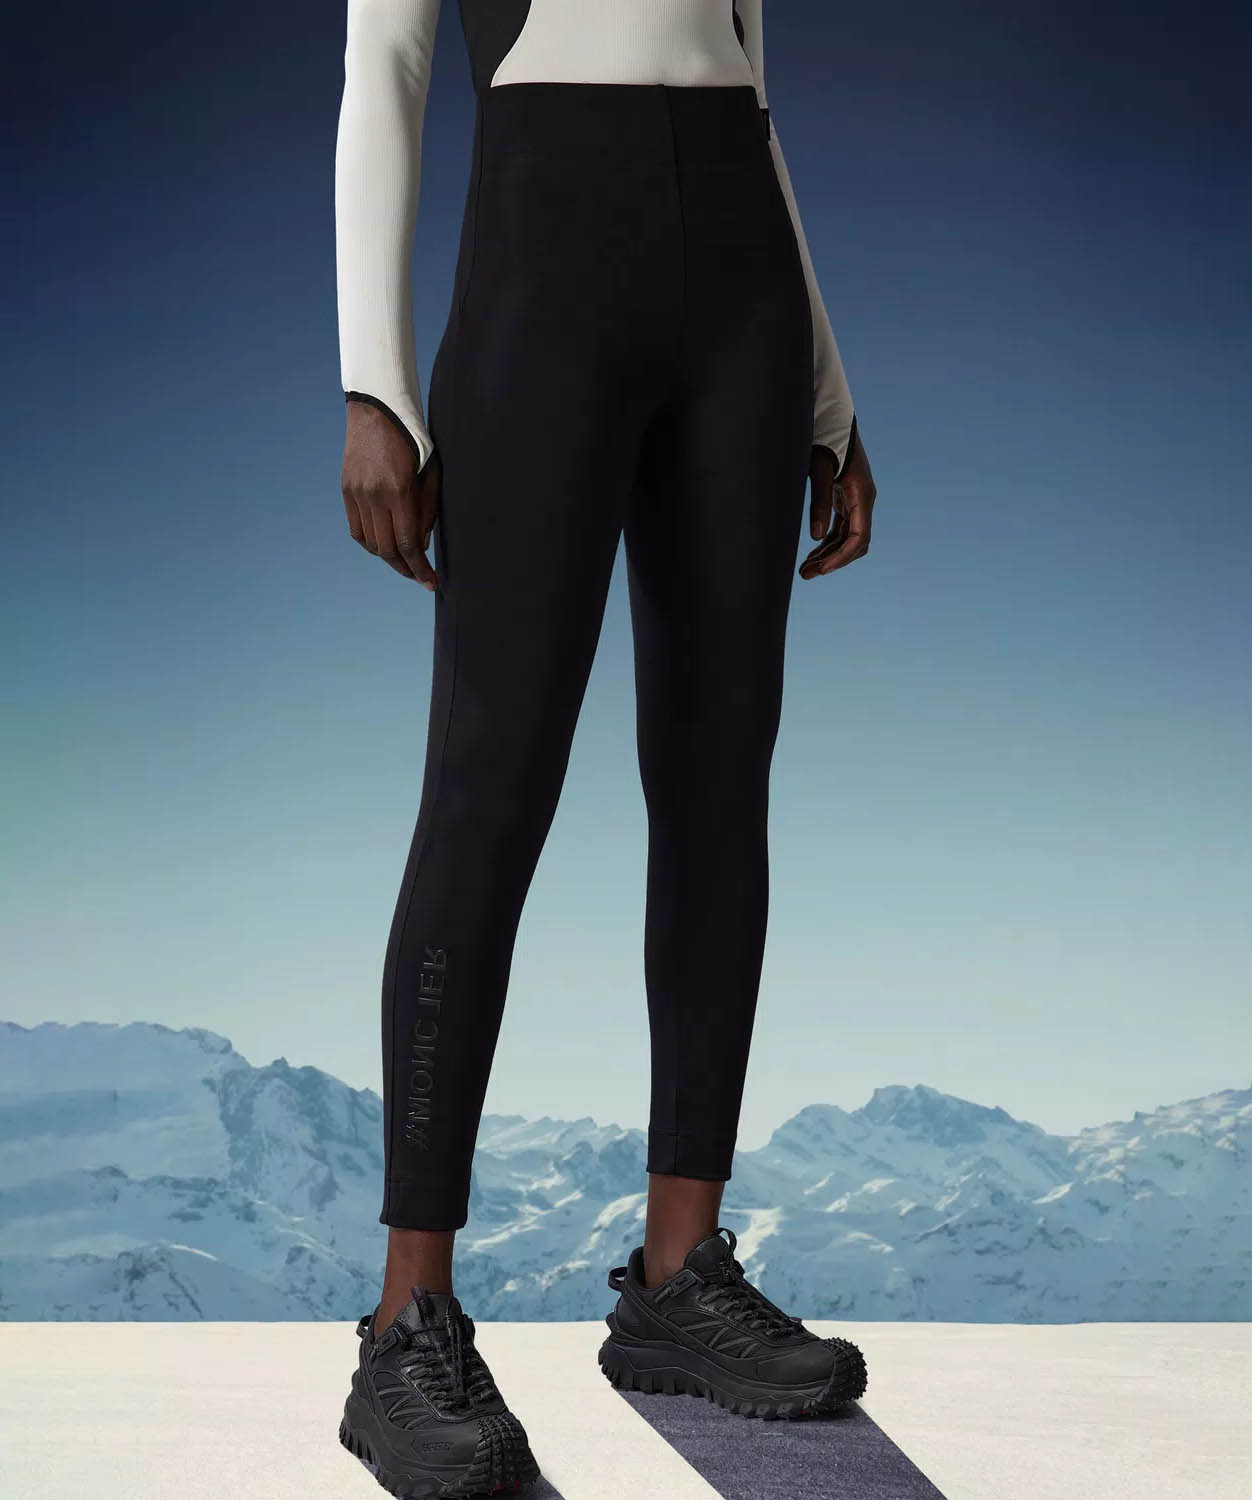 Black High-rise jersey leggings, Moncler Grenoble